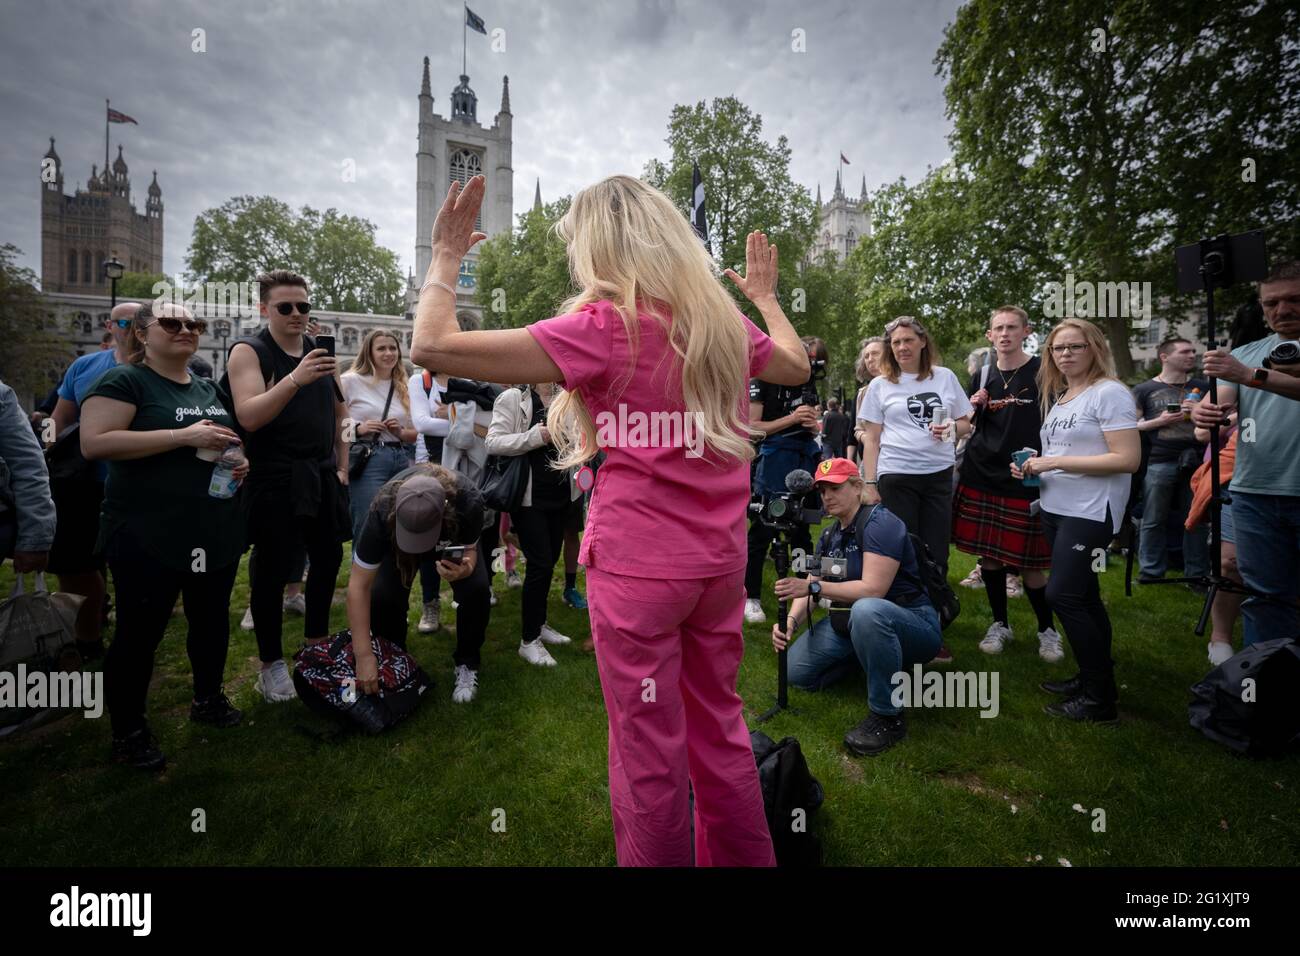 Kate Shemirani, ex infermiere e teorico della cospirazione anti-vax, partecipa a "Kill the Bill protesta" a Westminster, Londra, Regno Unito. Foto Stock